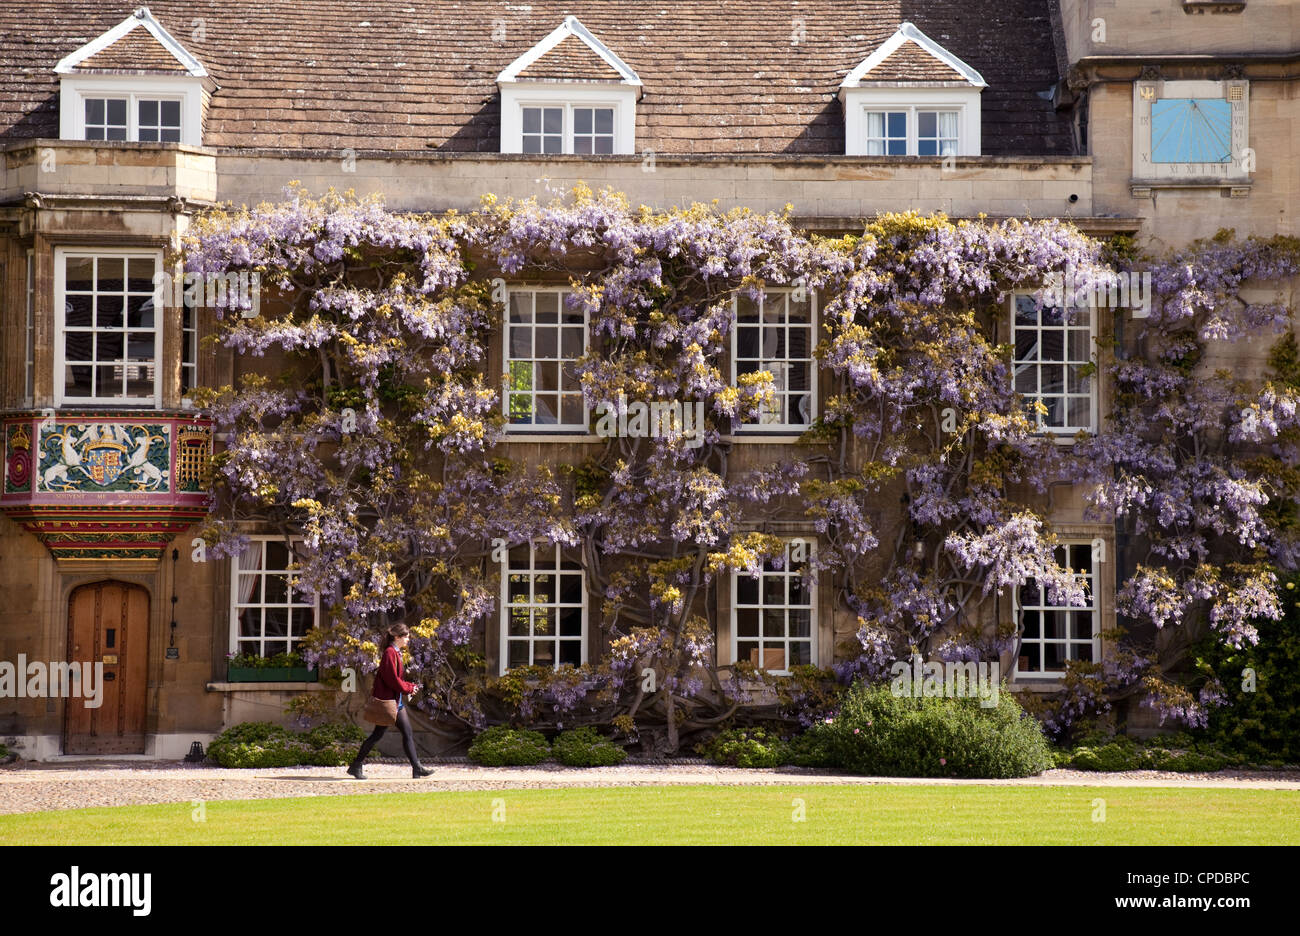 Cambridge College: Ein Student spaziert im Frühjahr an der Glyzinie vorbei, Christs College Cambridge, Cambridge University, Großbritannien Stockfoto